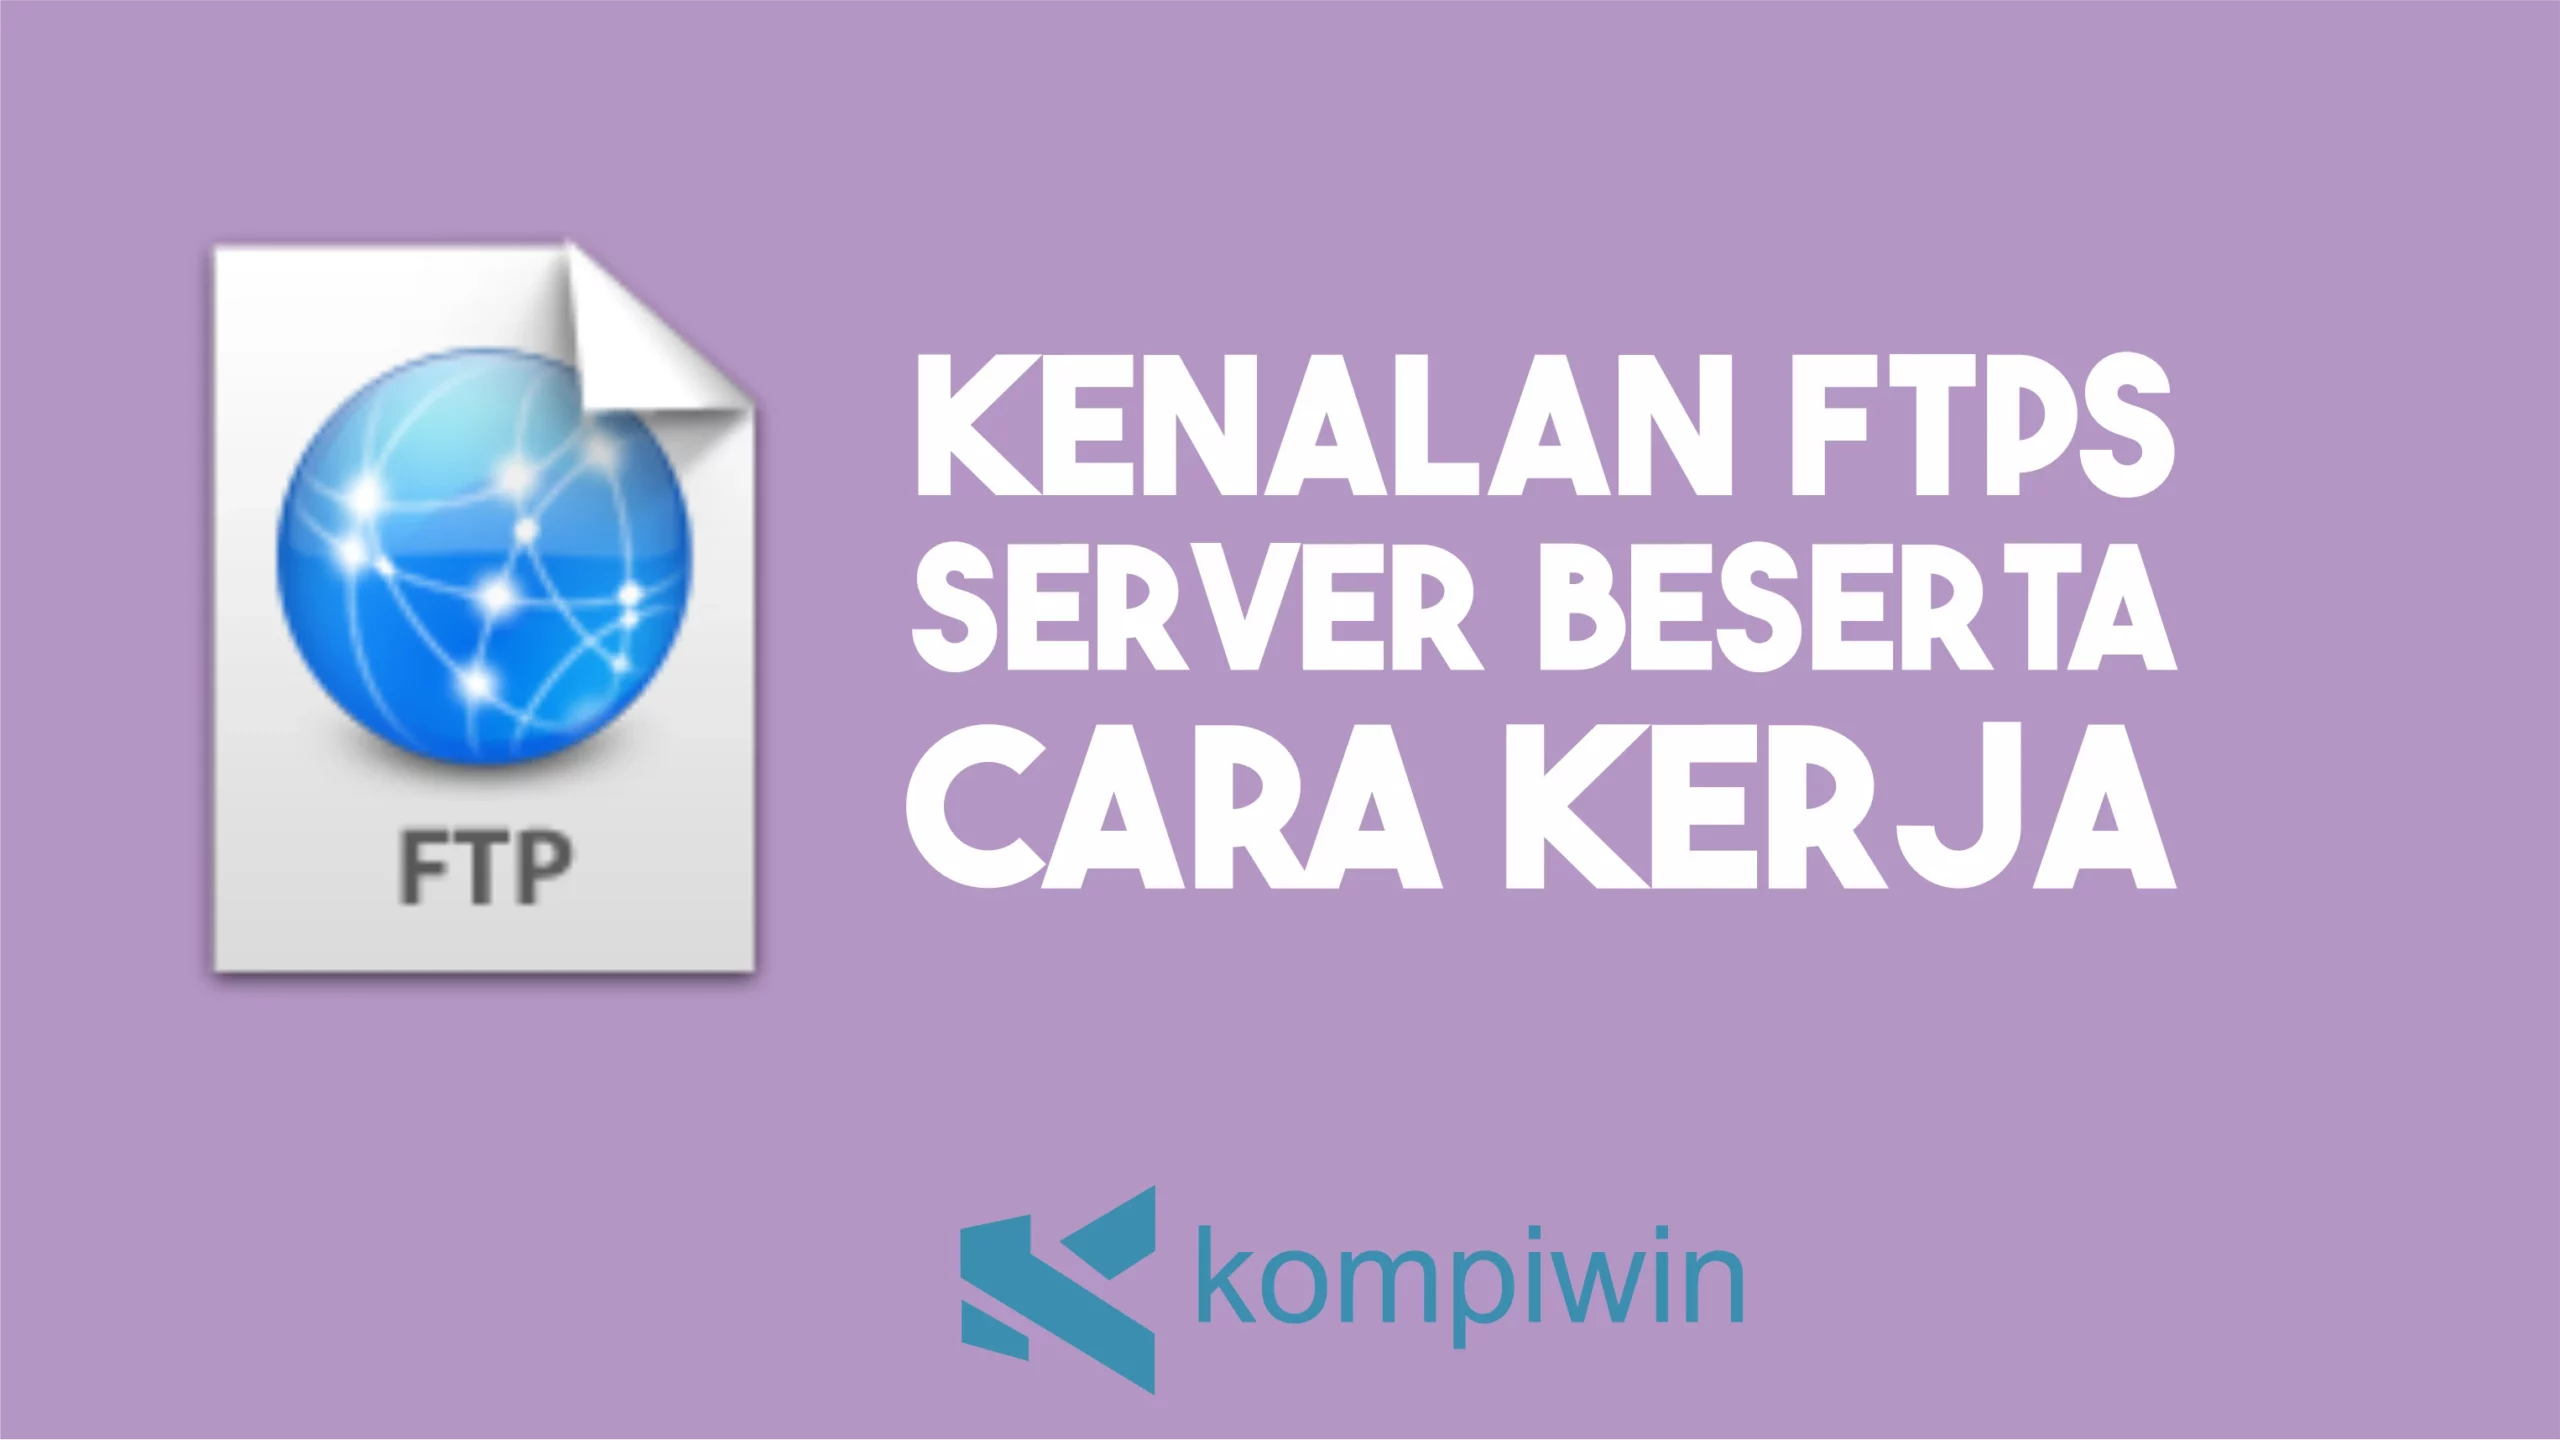 Kenalan FTPS Server Beserta Cara Kerja